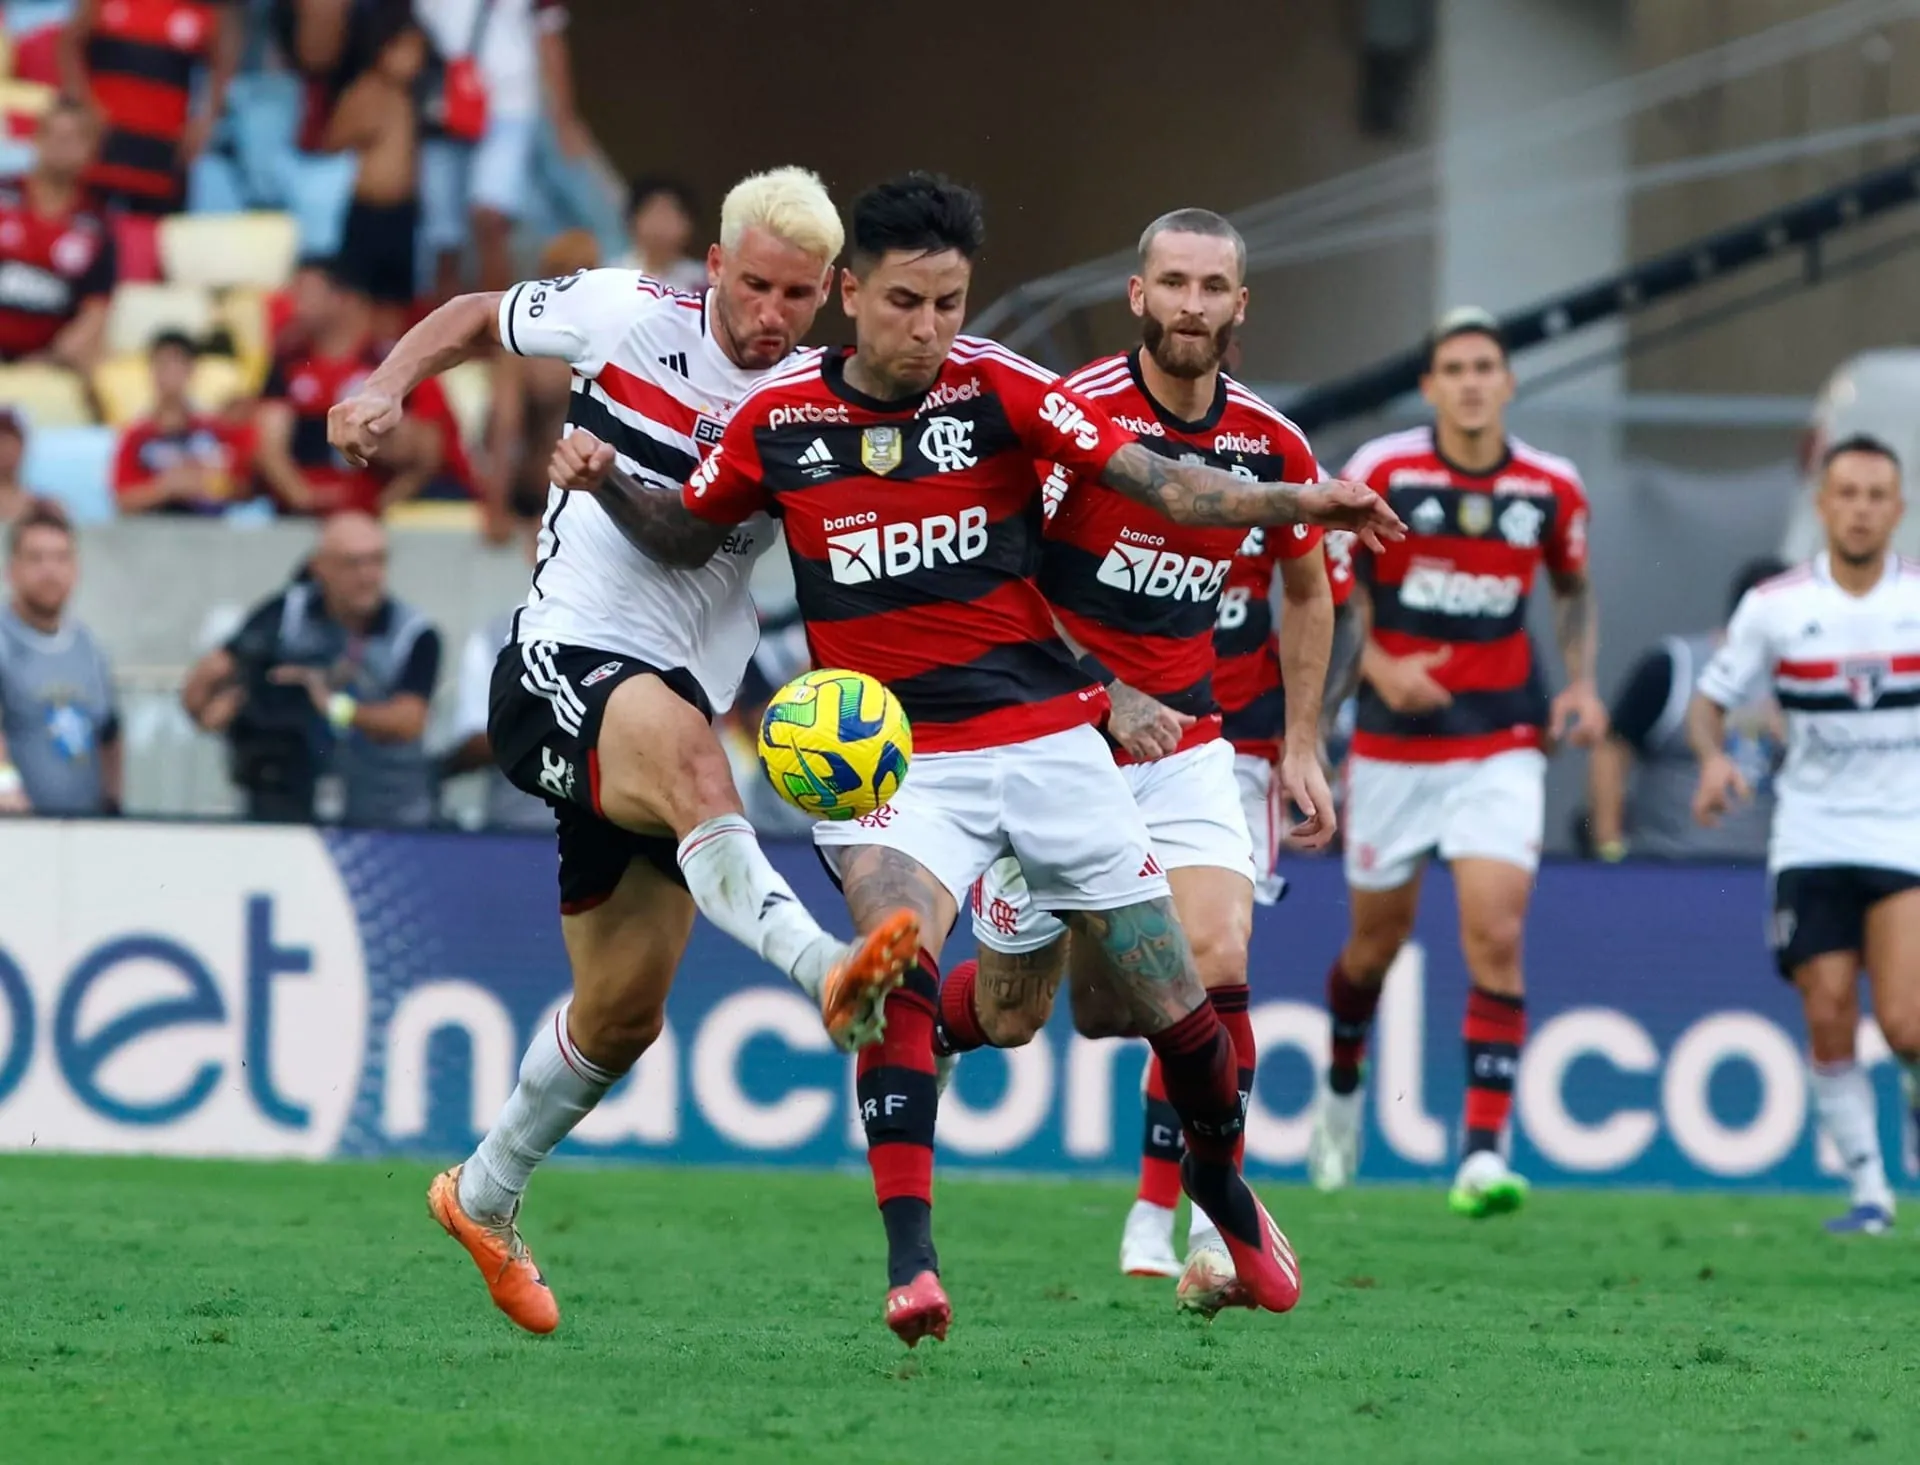 AO VIVO: São Paulo 1 x 1 Flamengo; veja como foi o título tricolor minuto a  minuto